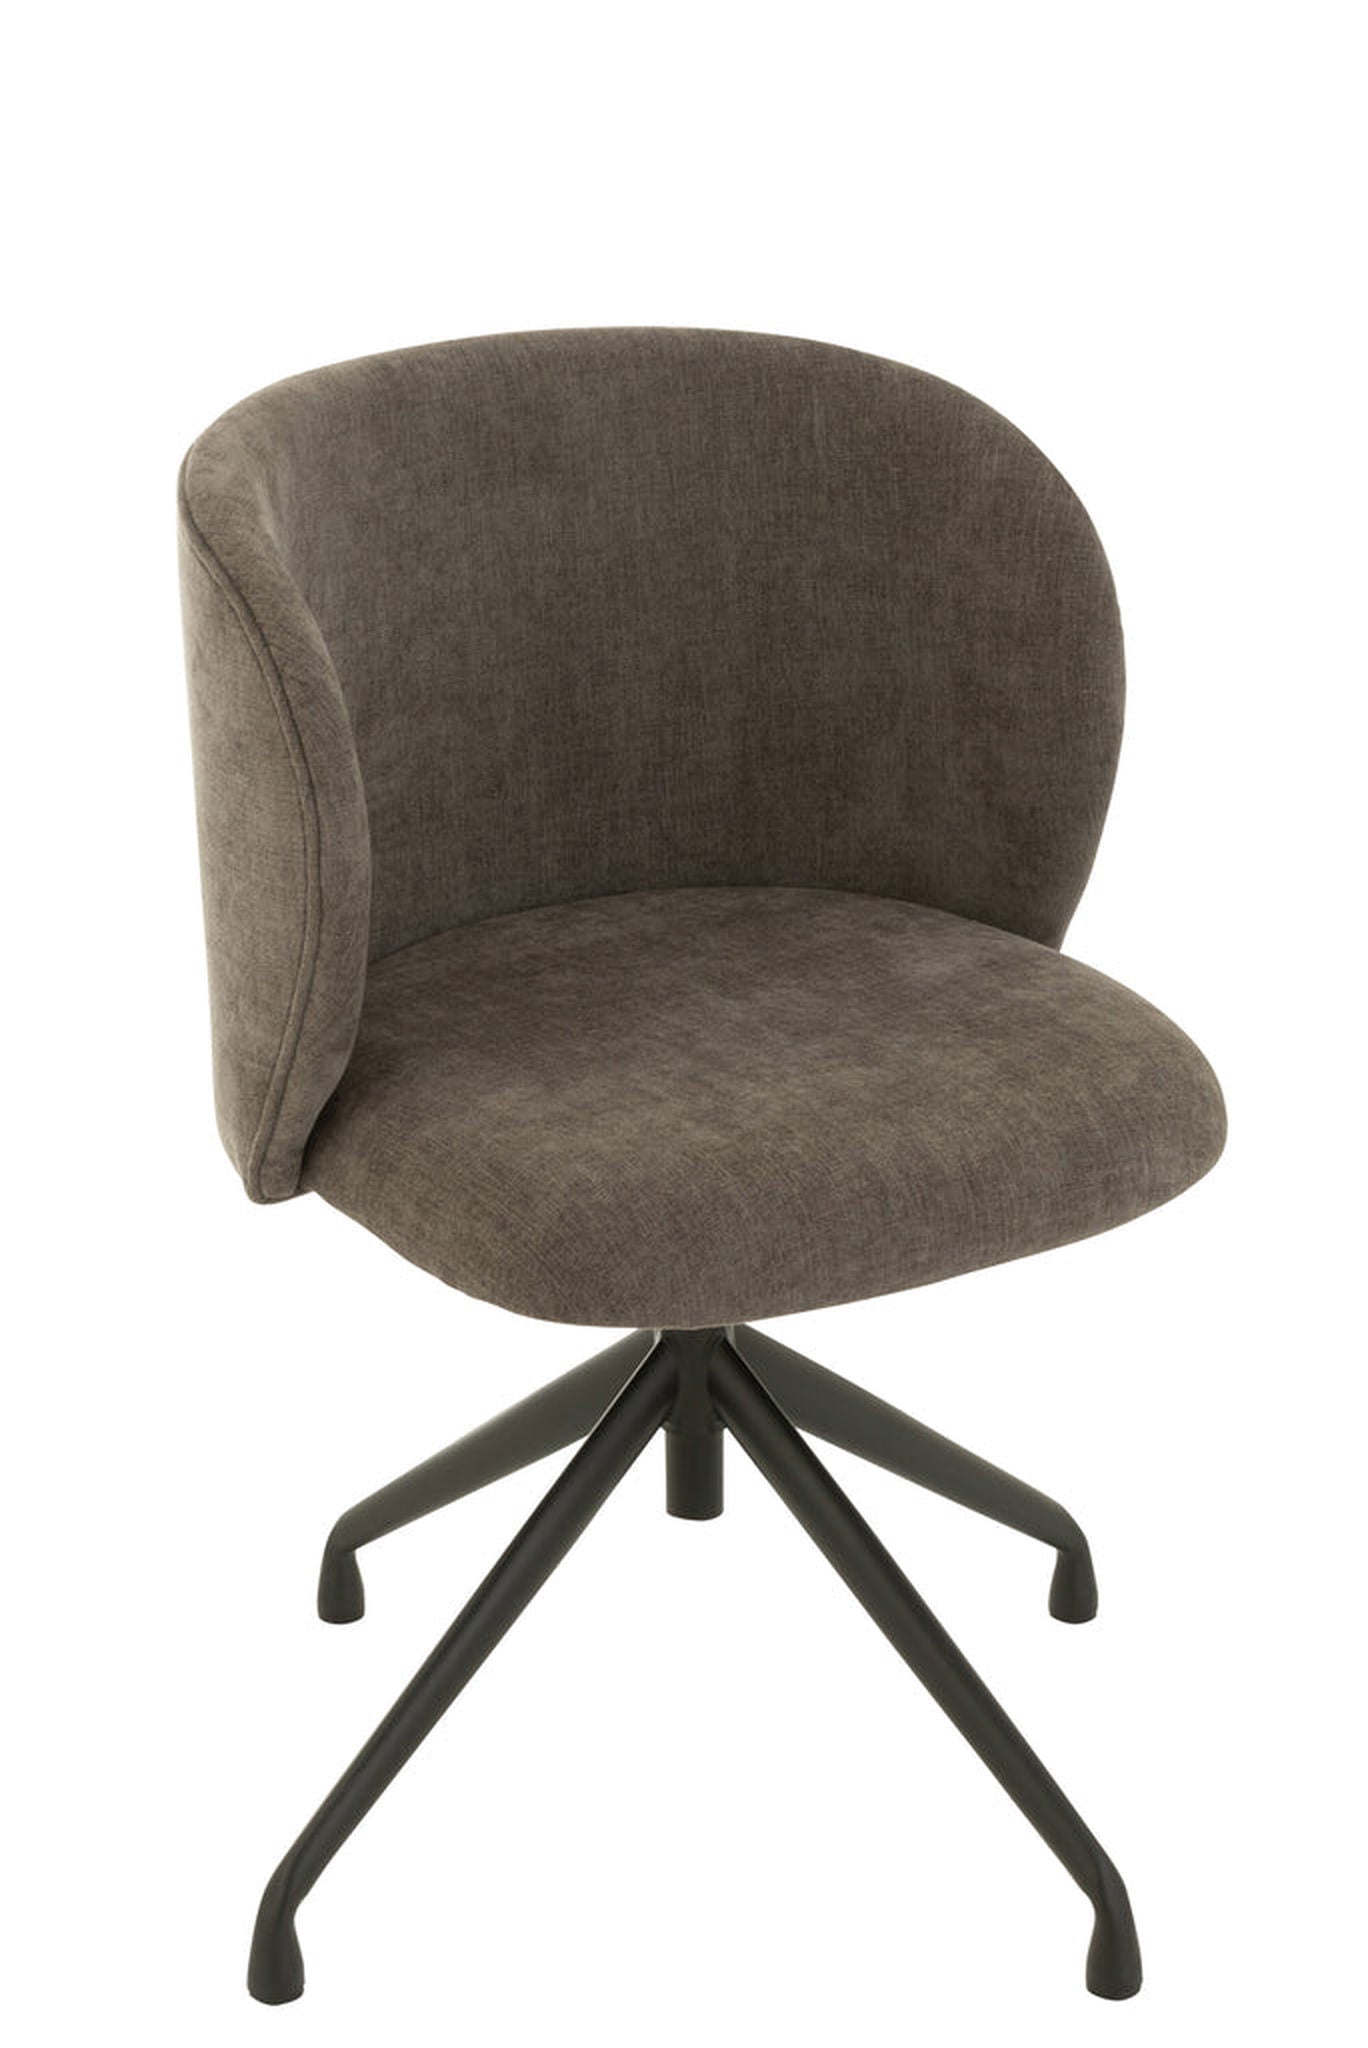 Chair Turn/Up/Down Textile Dark Grey - vivahabitat.com